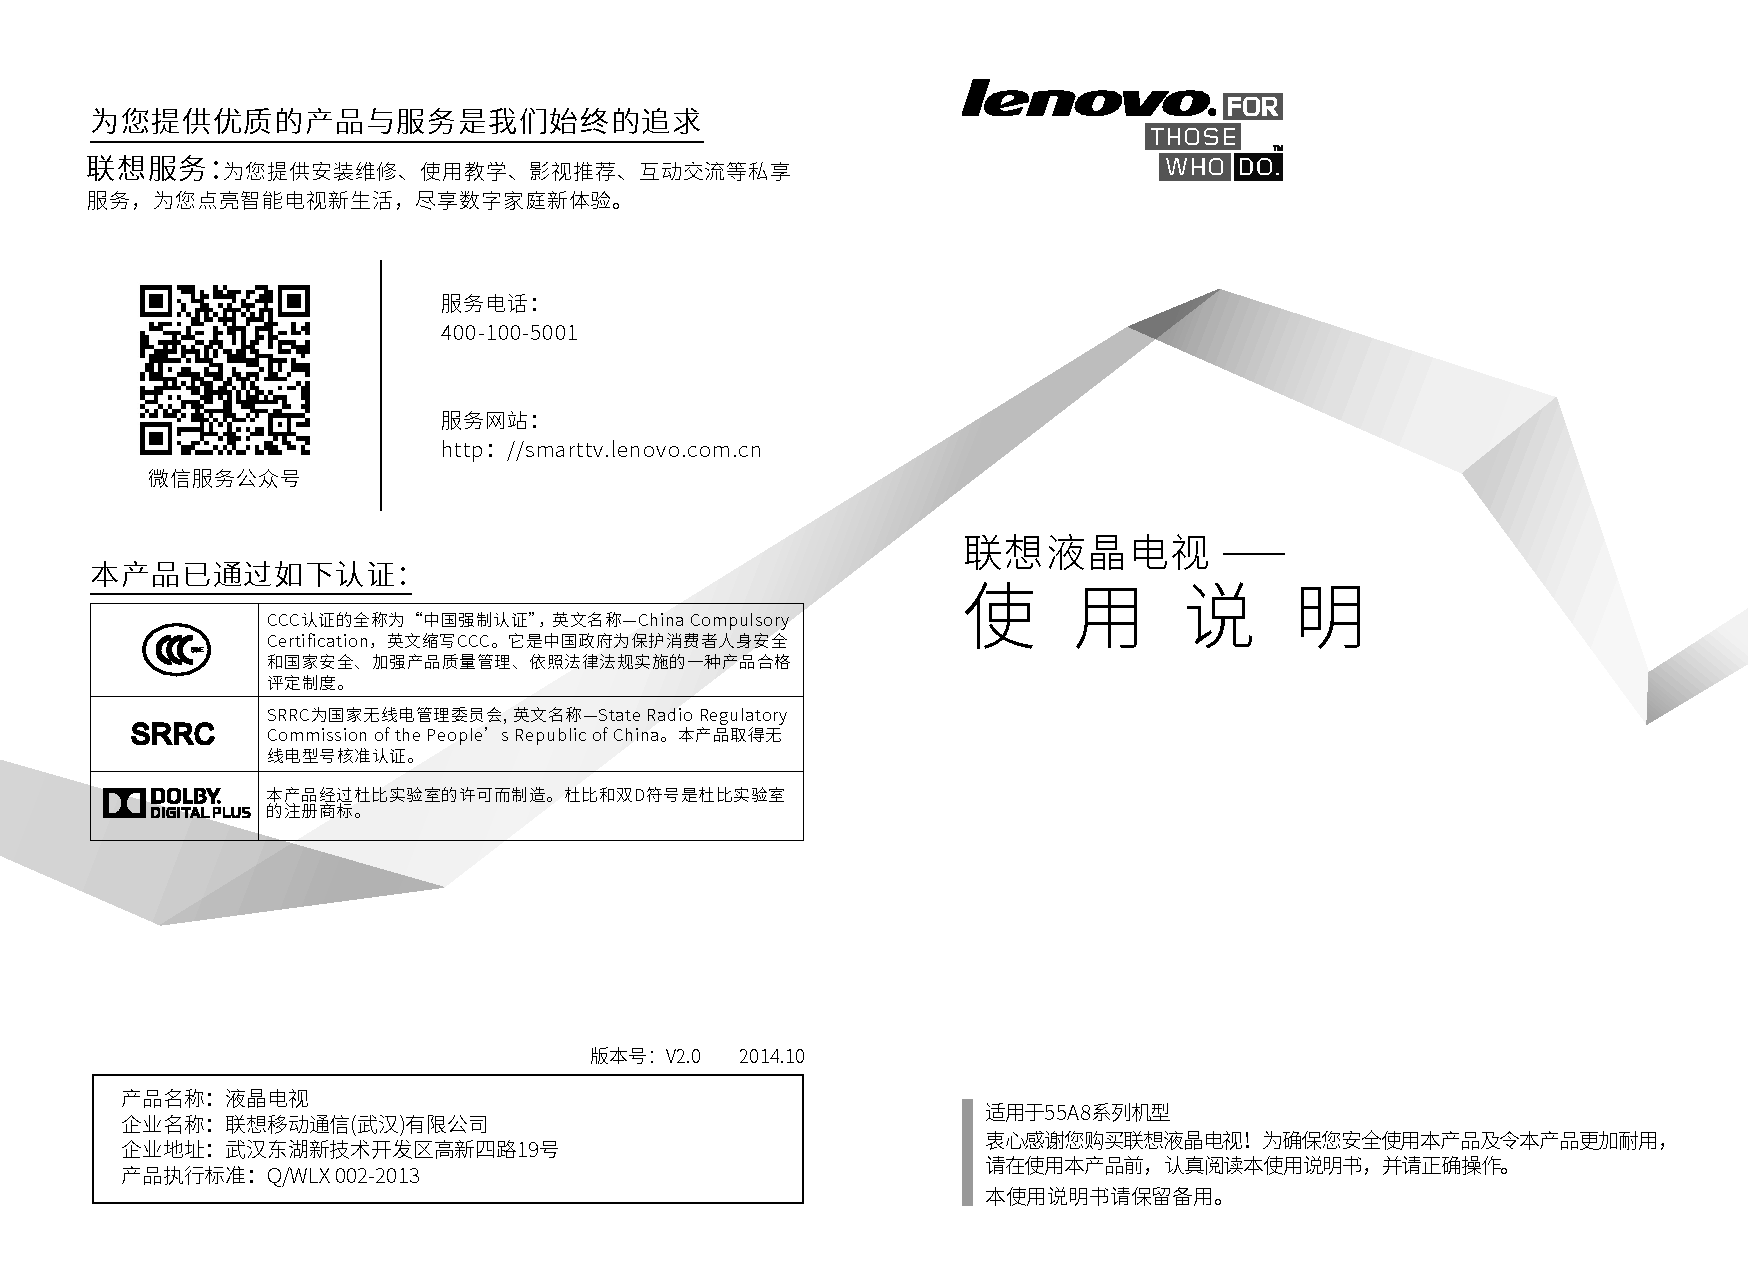 联想 Lenovo 55A8 使用说明书 封面